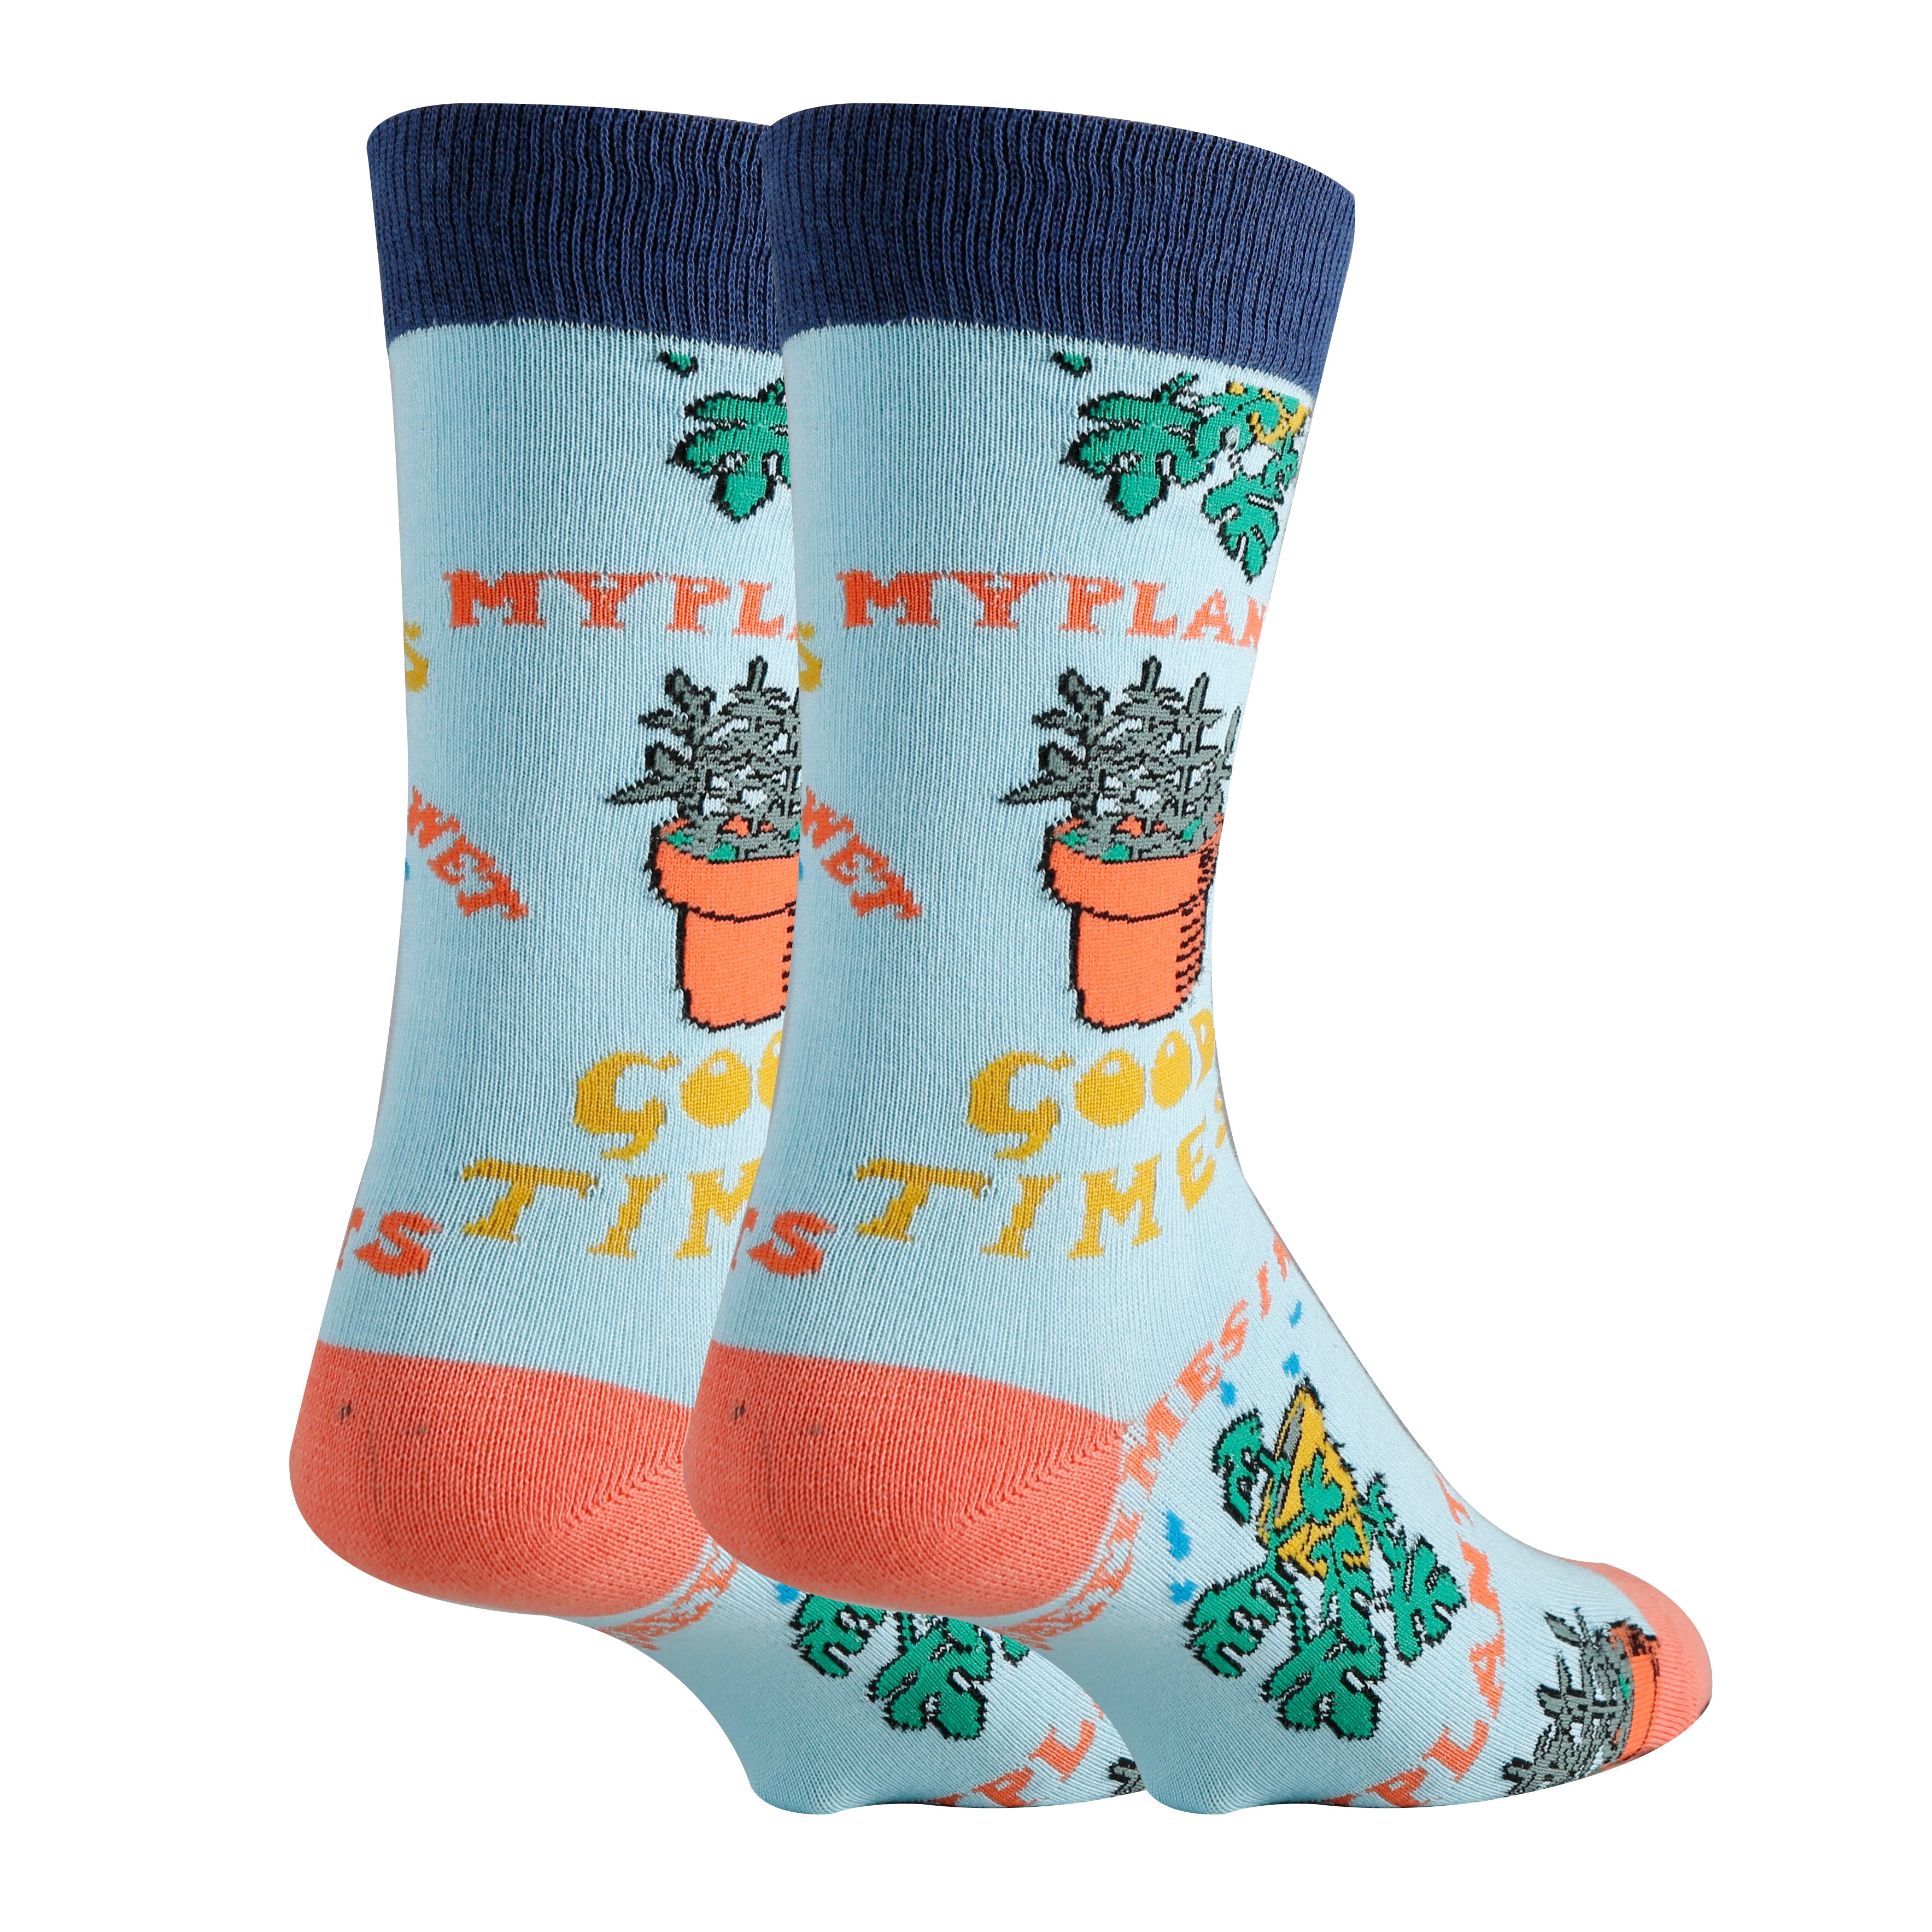 wet-my-plants-crew-socks-mens-2-oooh-yeah-socks